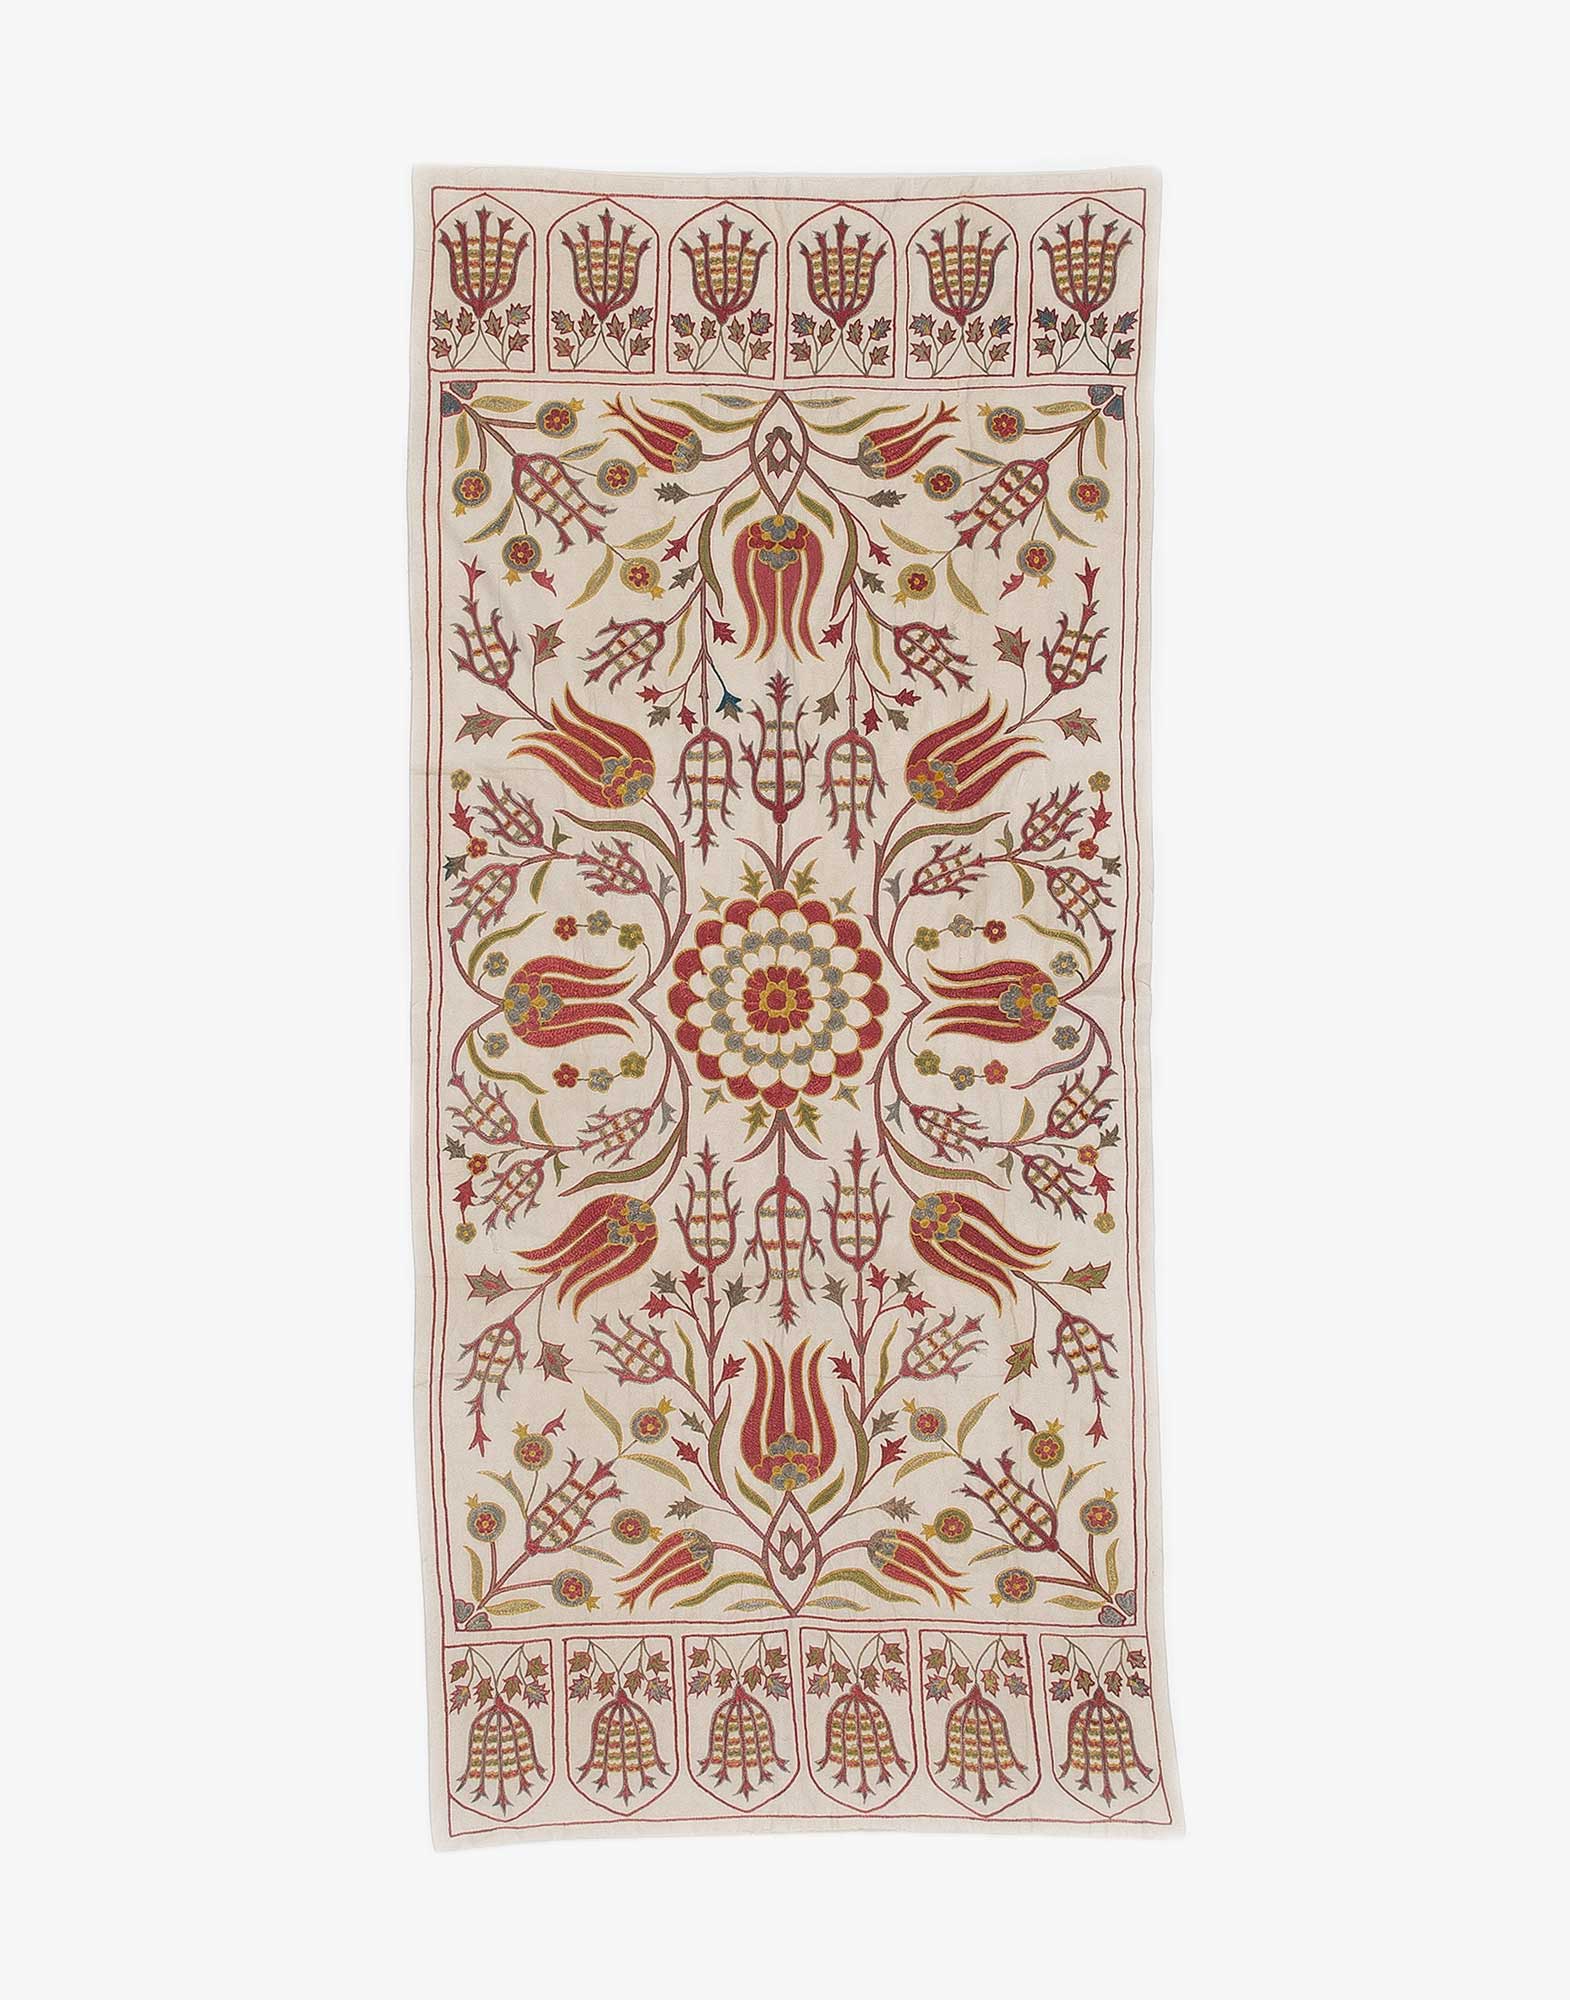 Uzbek Suzani Embroidered Silk Textile